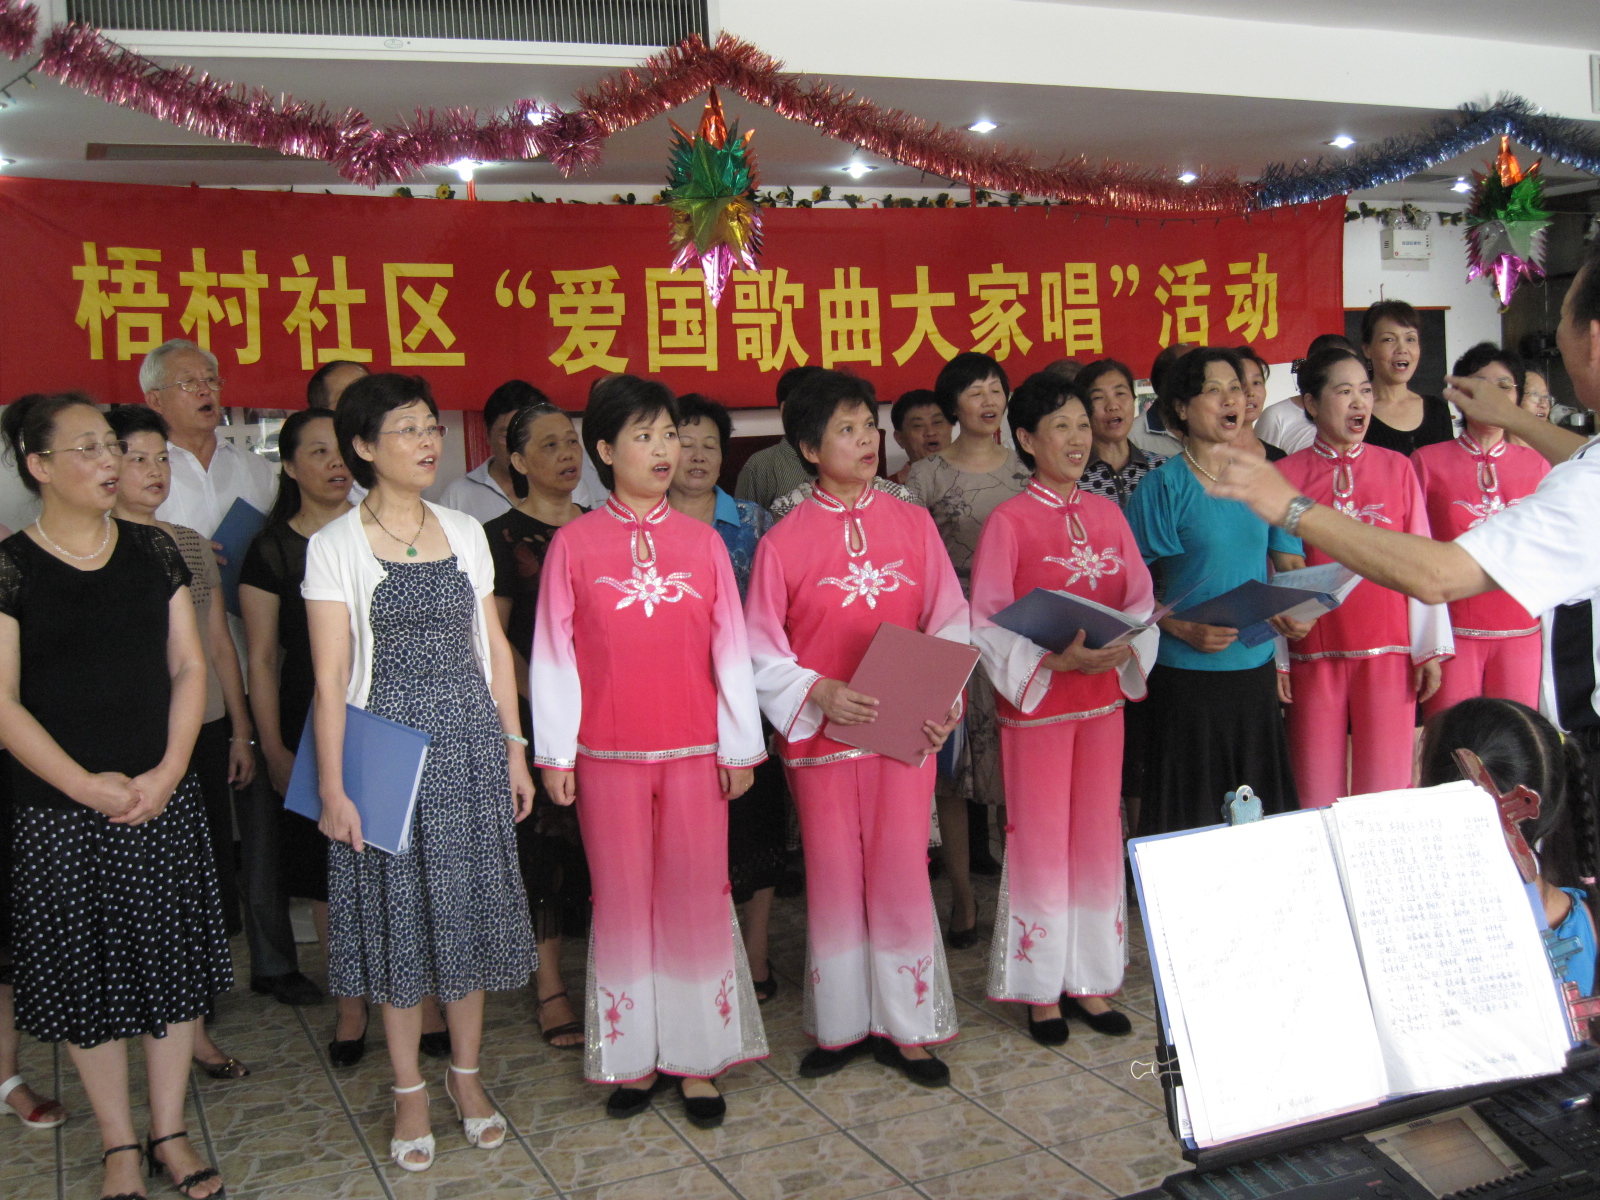 梧村社区开展爱国歌曲大家唱活动 - 文明社区